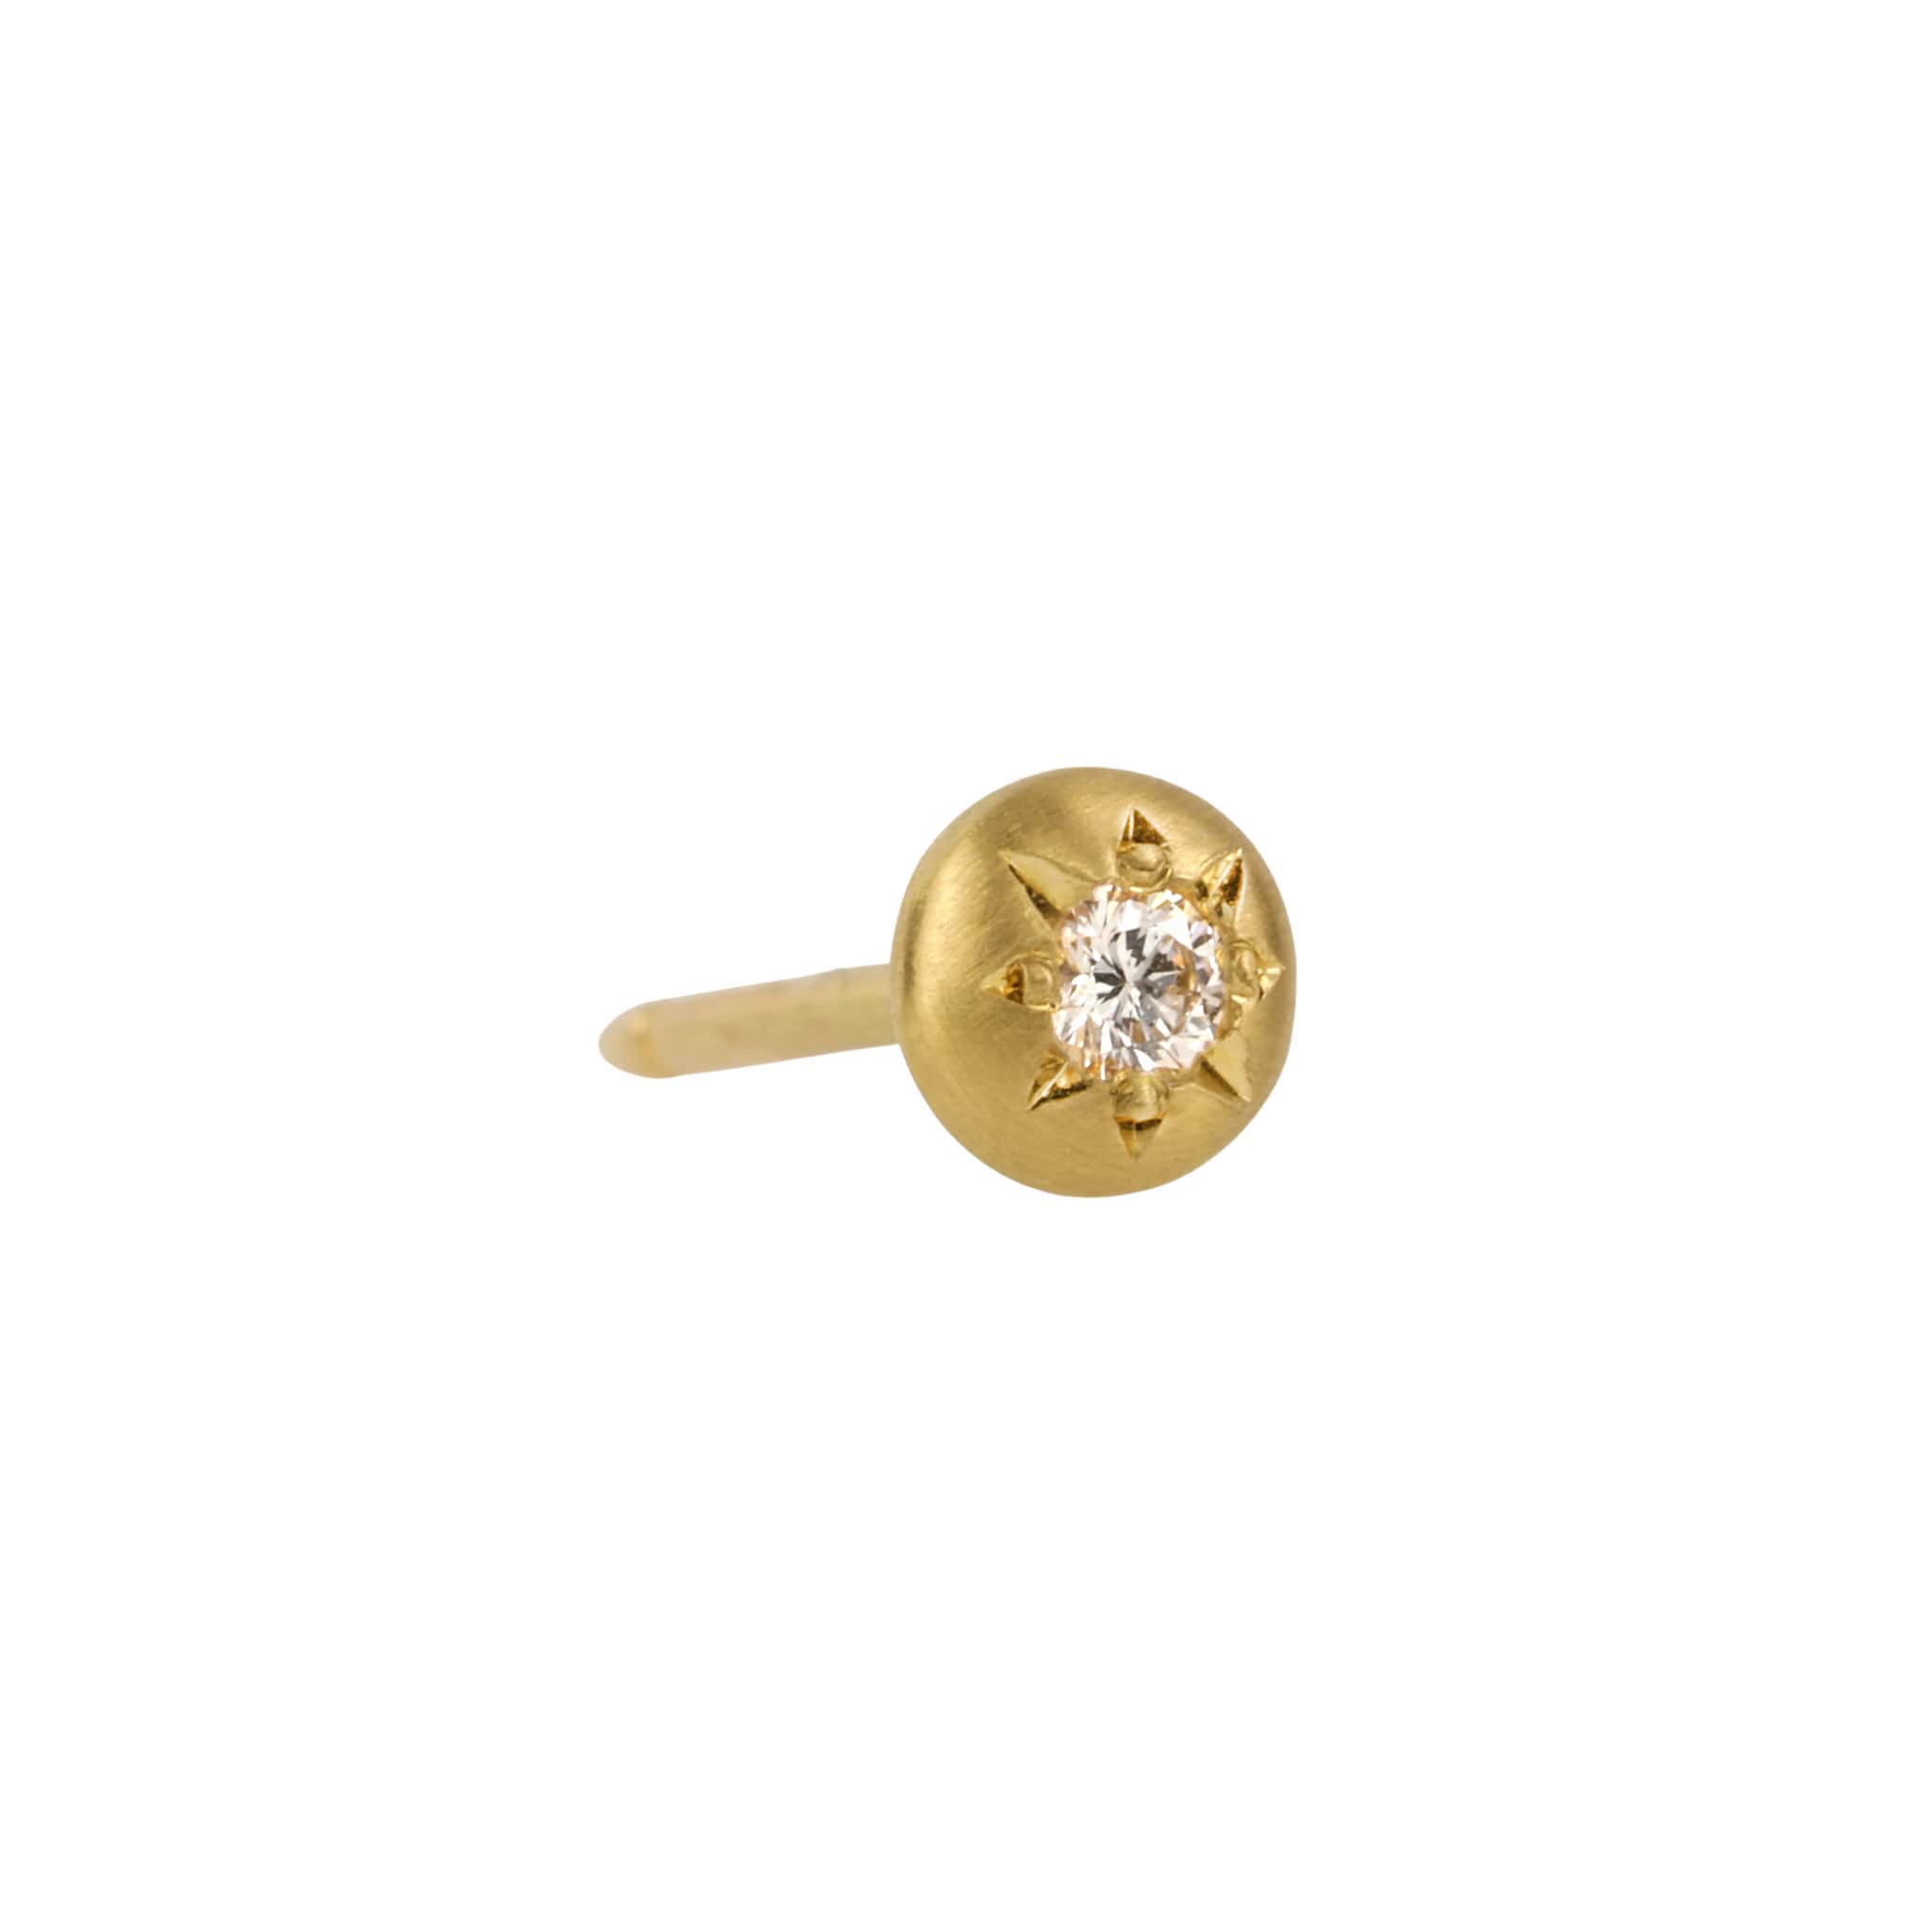 Caroline Ellen 20K Gold Small Flower Stud Earrings with Diamonds